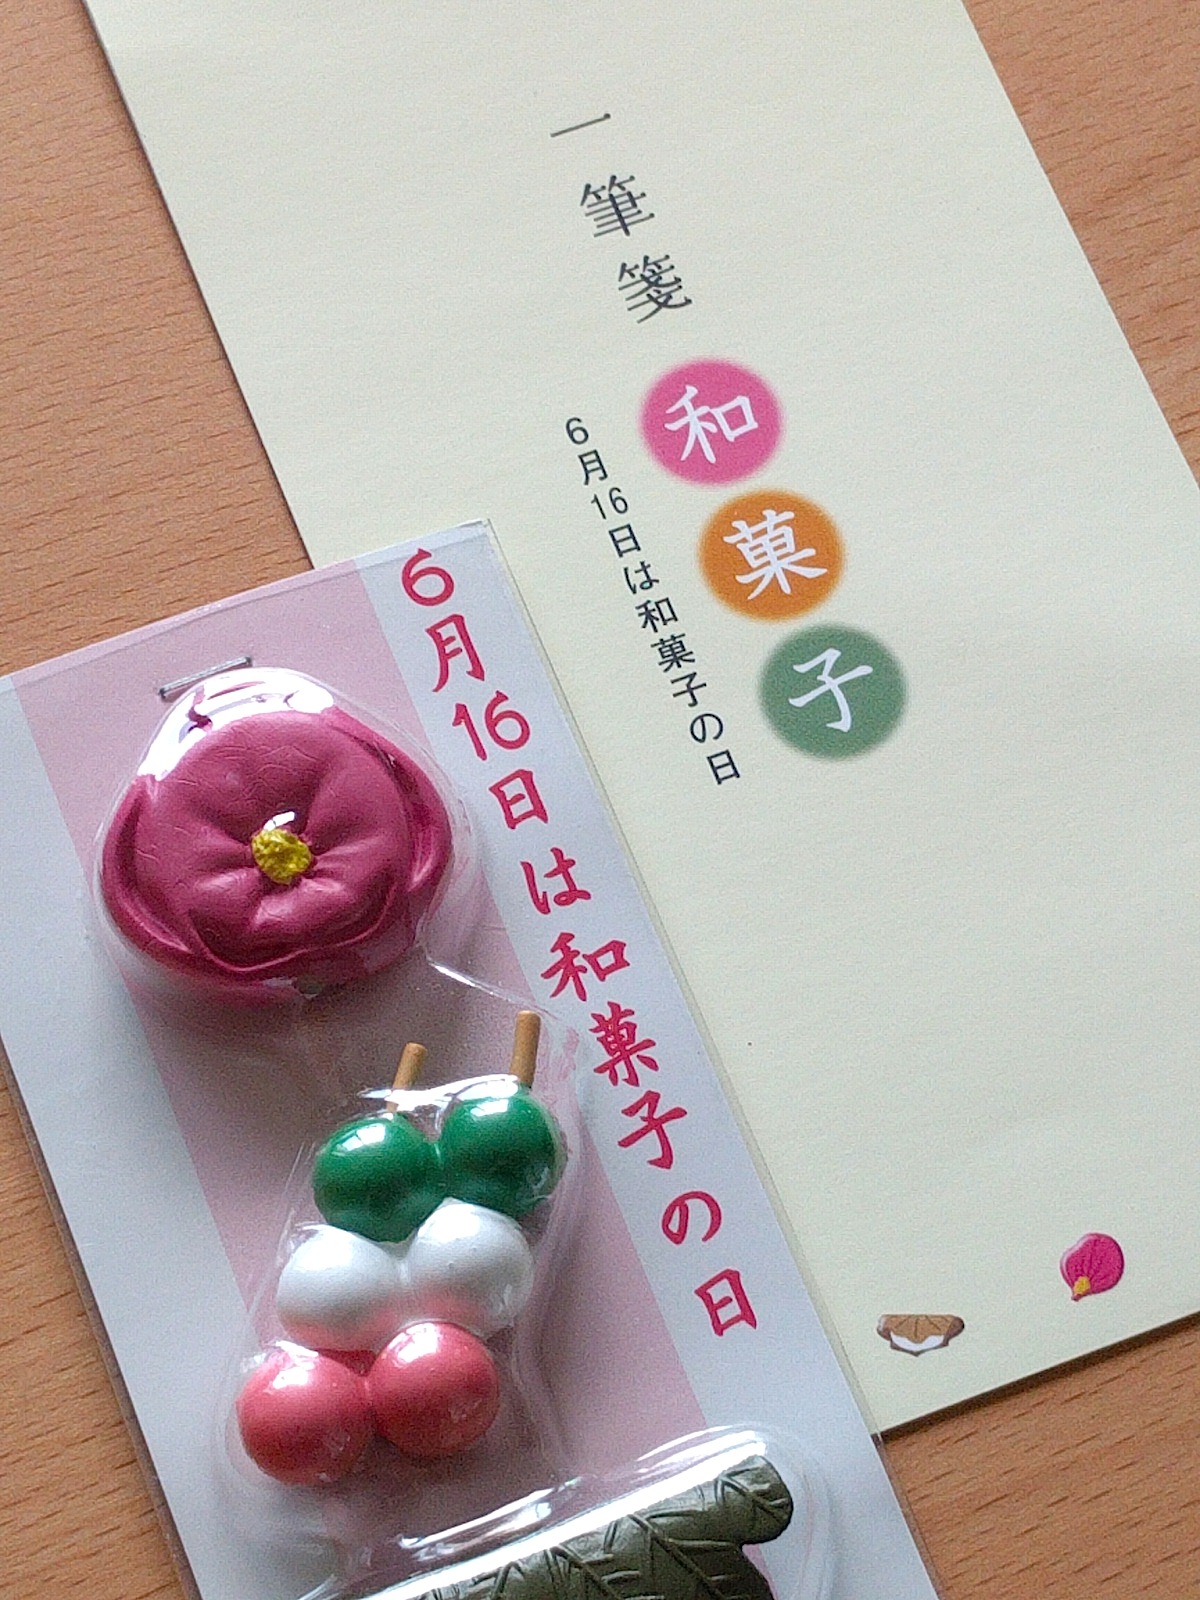 6月16日は 和菓子の日 豆なブログ